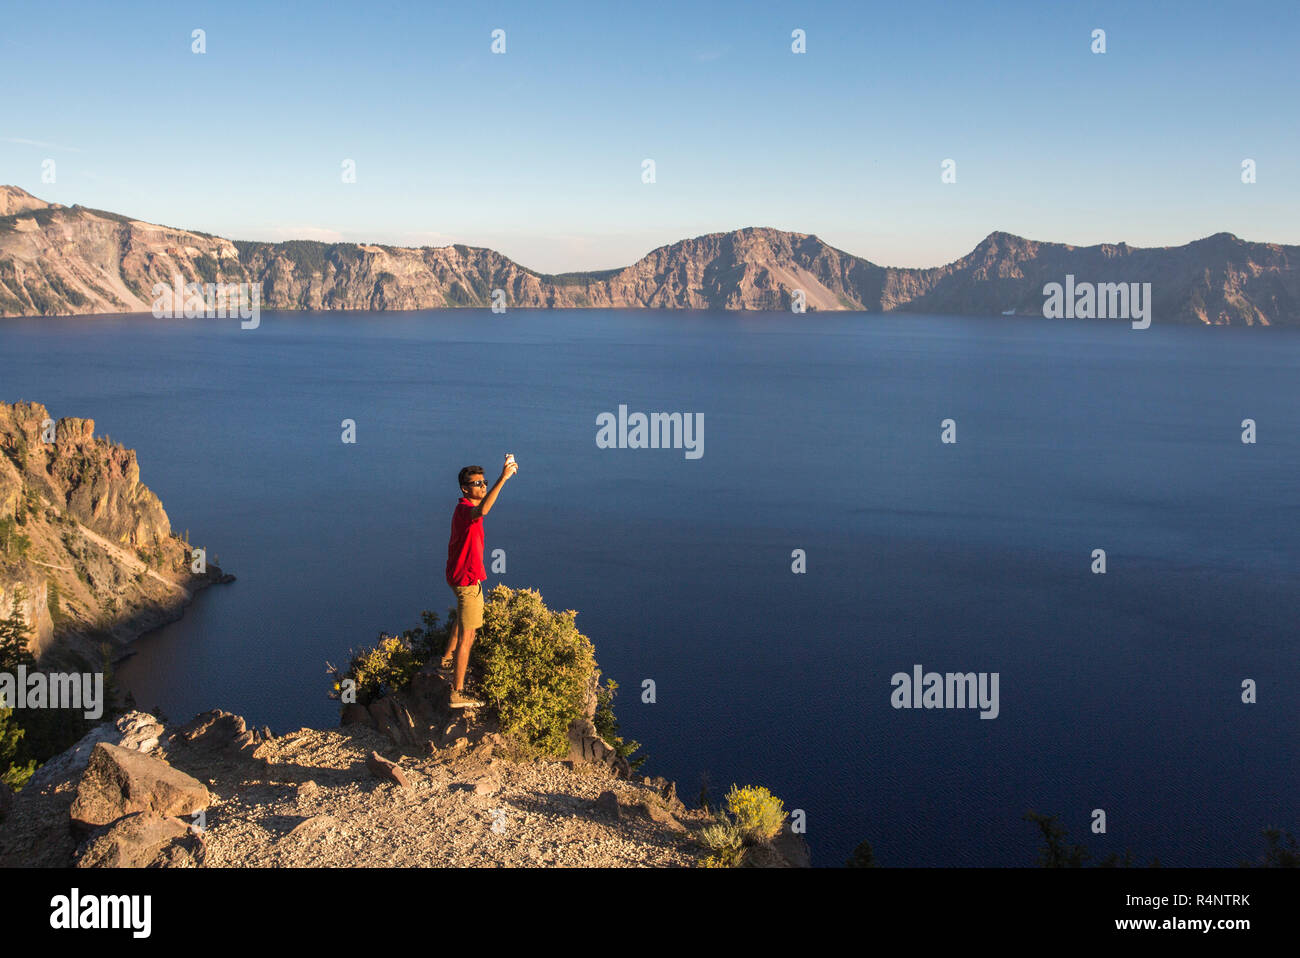 Ein junger Mann in einem roten T-Shirt stellt für eine selfie auf einem Felsvorsprung hoch über einem tiefblauen See umgeben von Bergen, Crater Lake, Oregon, USA Stockfoto